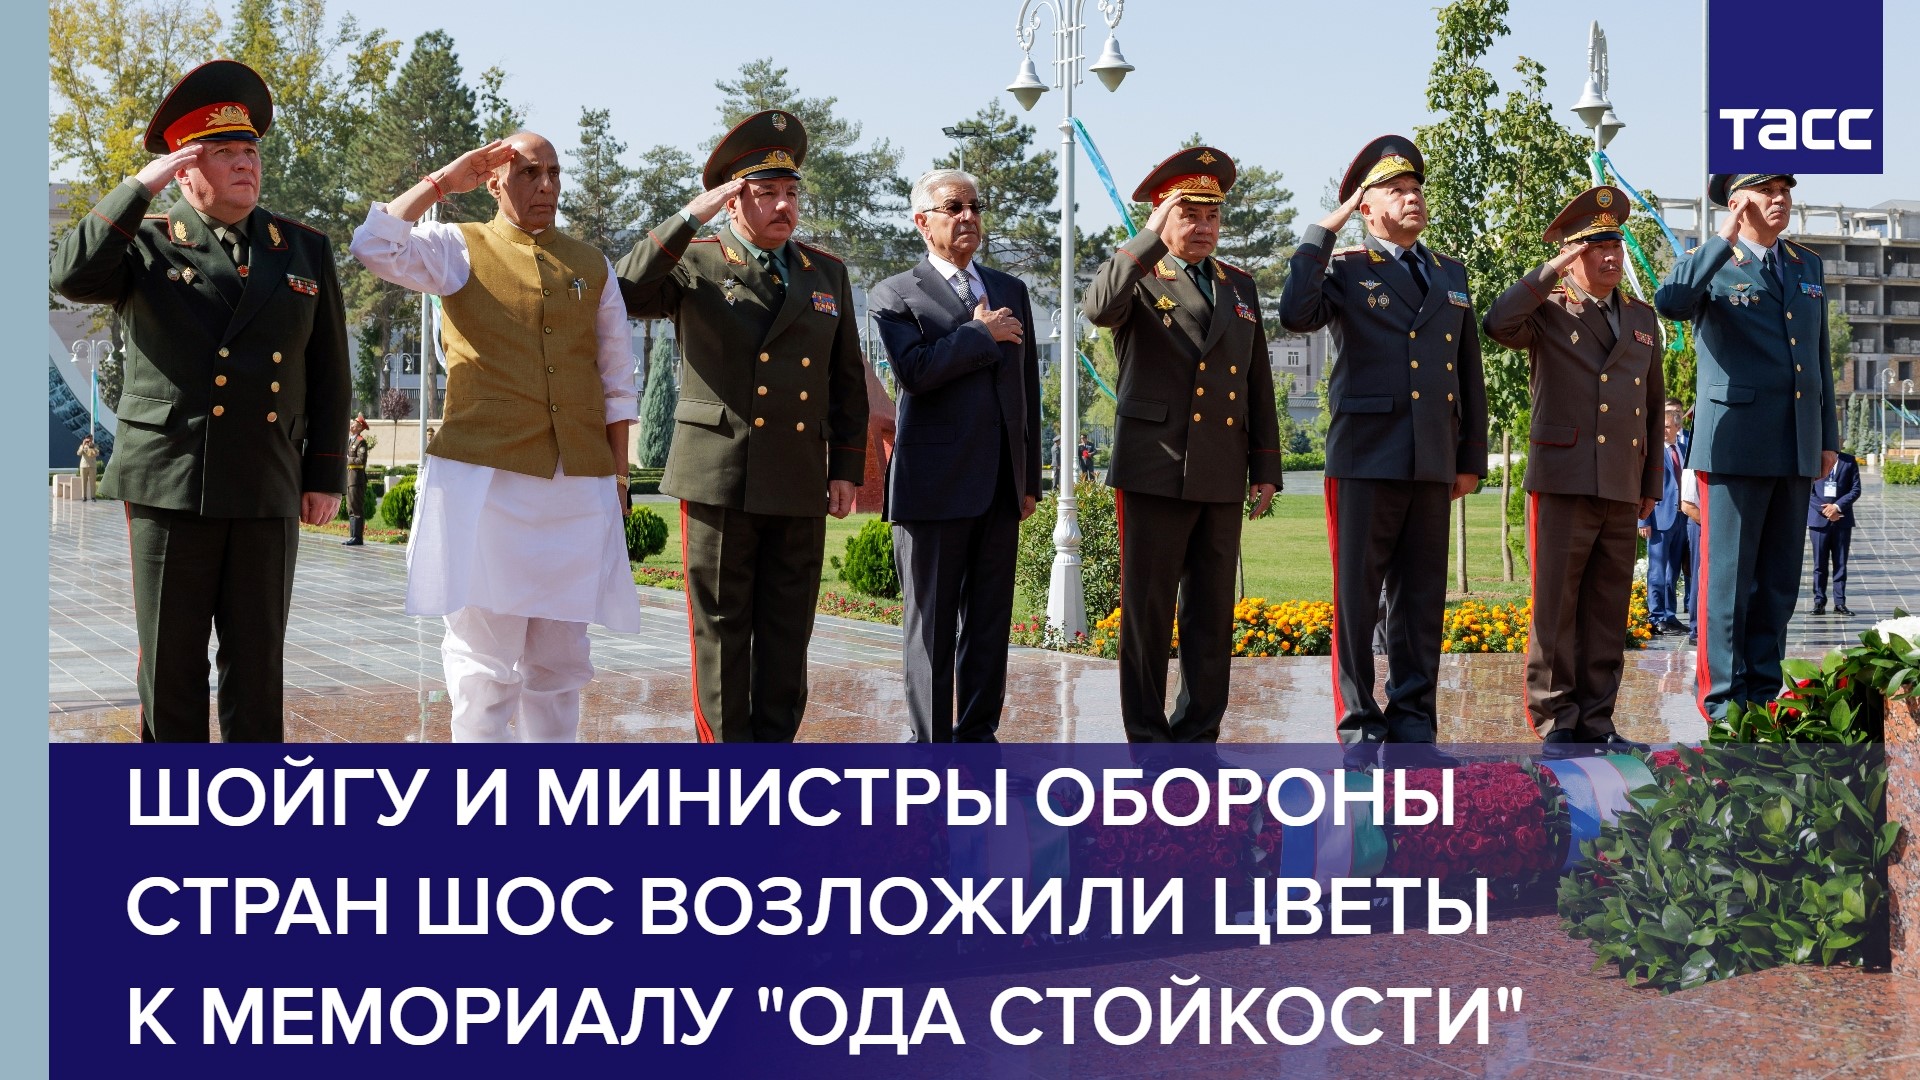 Шойгу и министры обороны стран ШОС возложили цветы к мемориалу "Ода стойкости" в Ташкенте